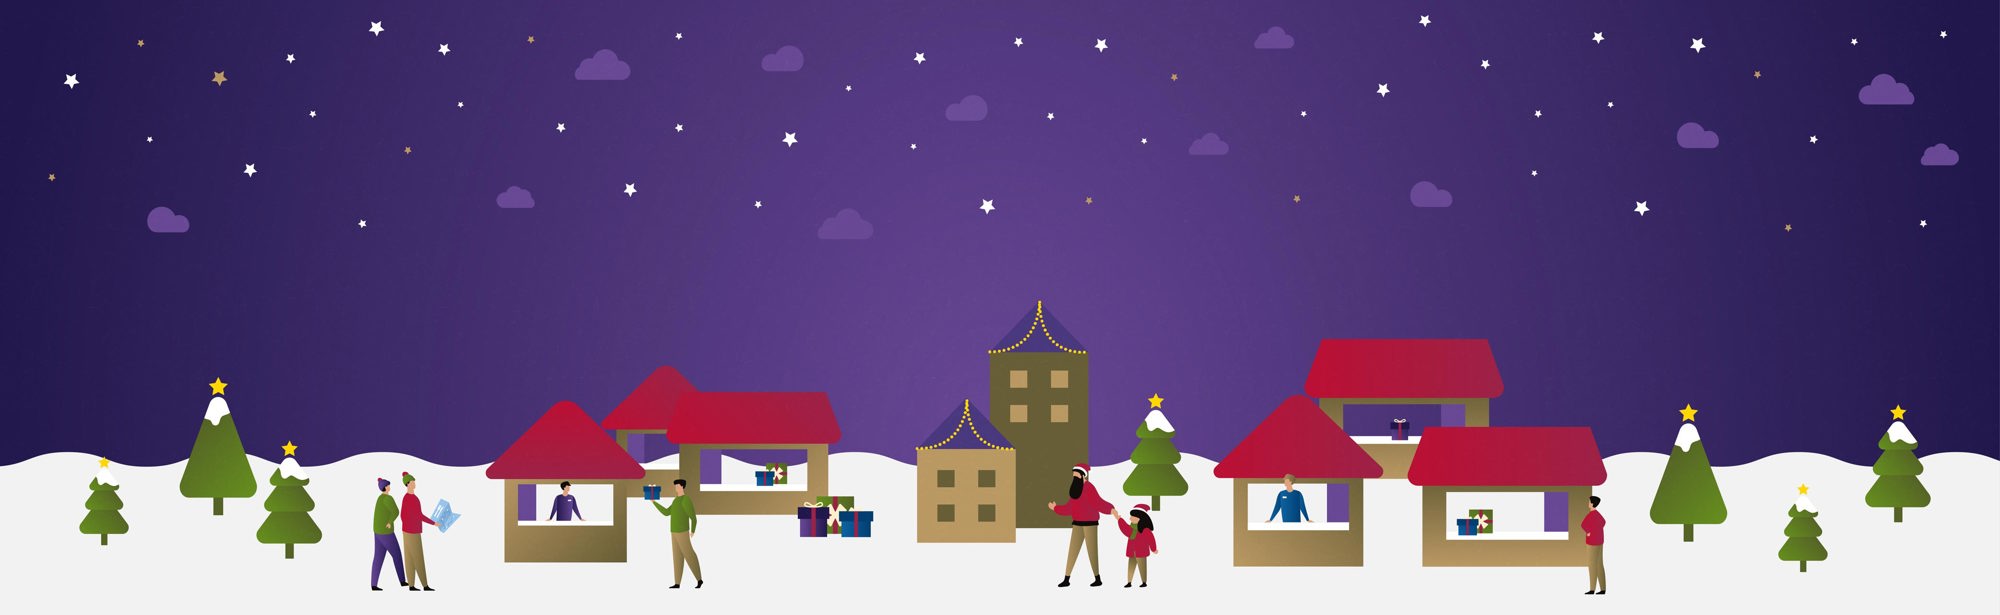 Digitale tekening van winters tafereel, huisstijl Kerststad Valkenburg